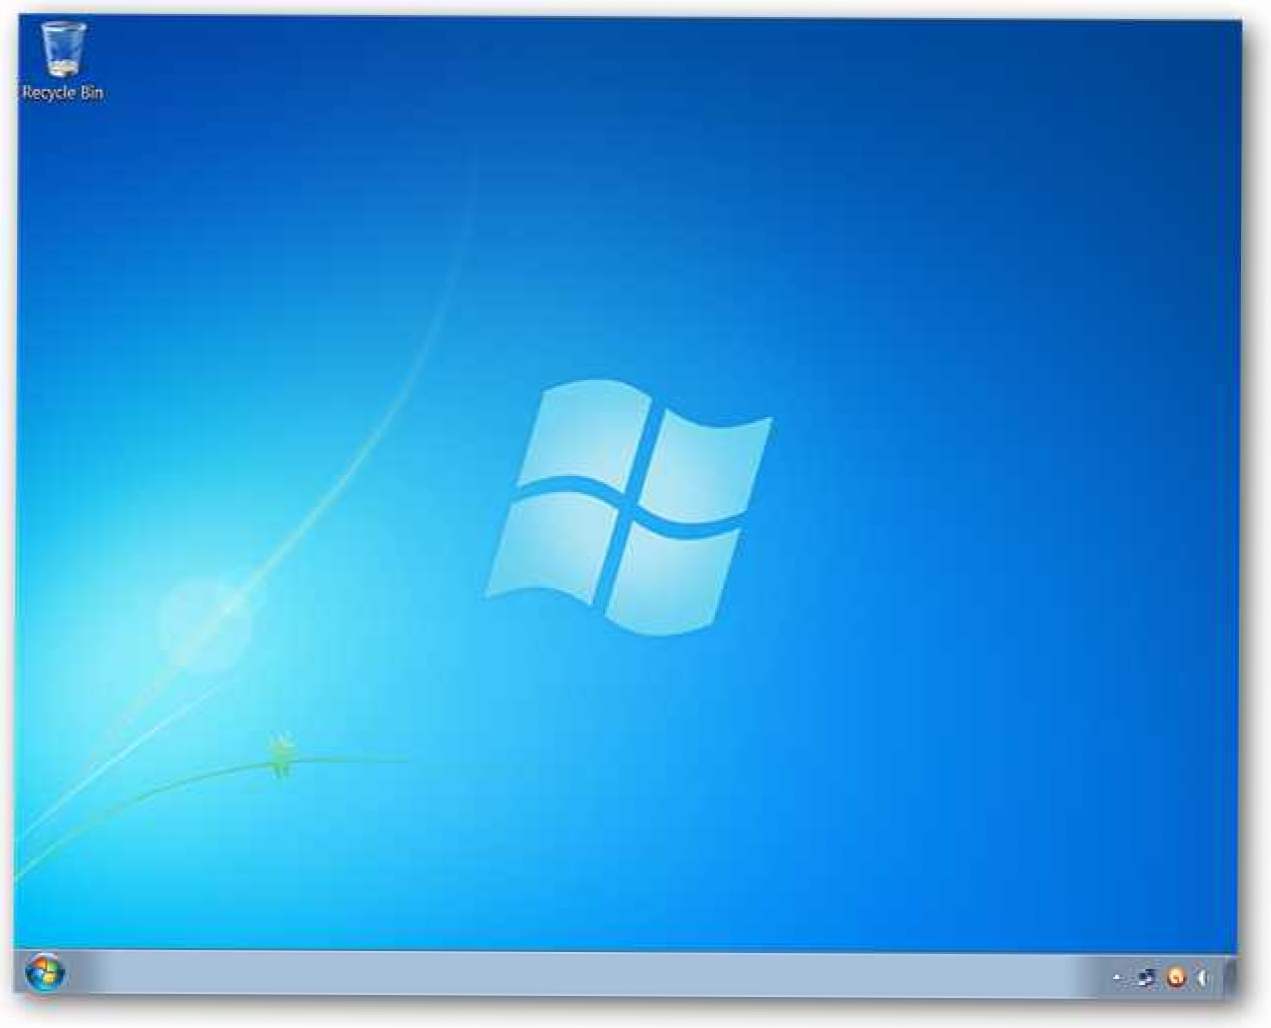 Koristite svoje omiljene pozadinske slike u Windows 7 Starter Editionu (Kako da)